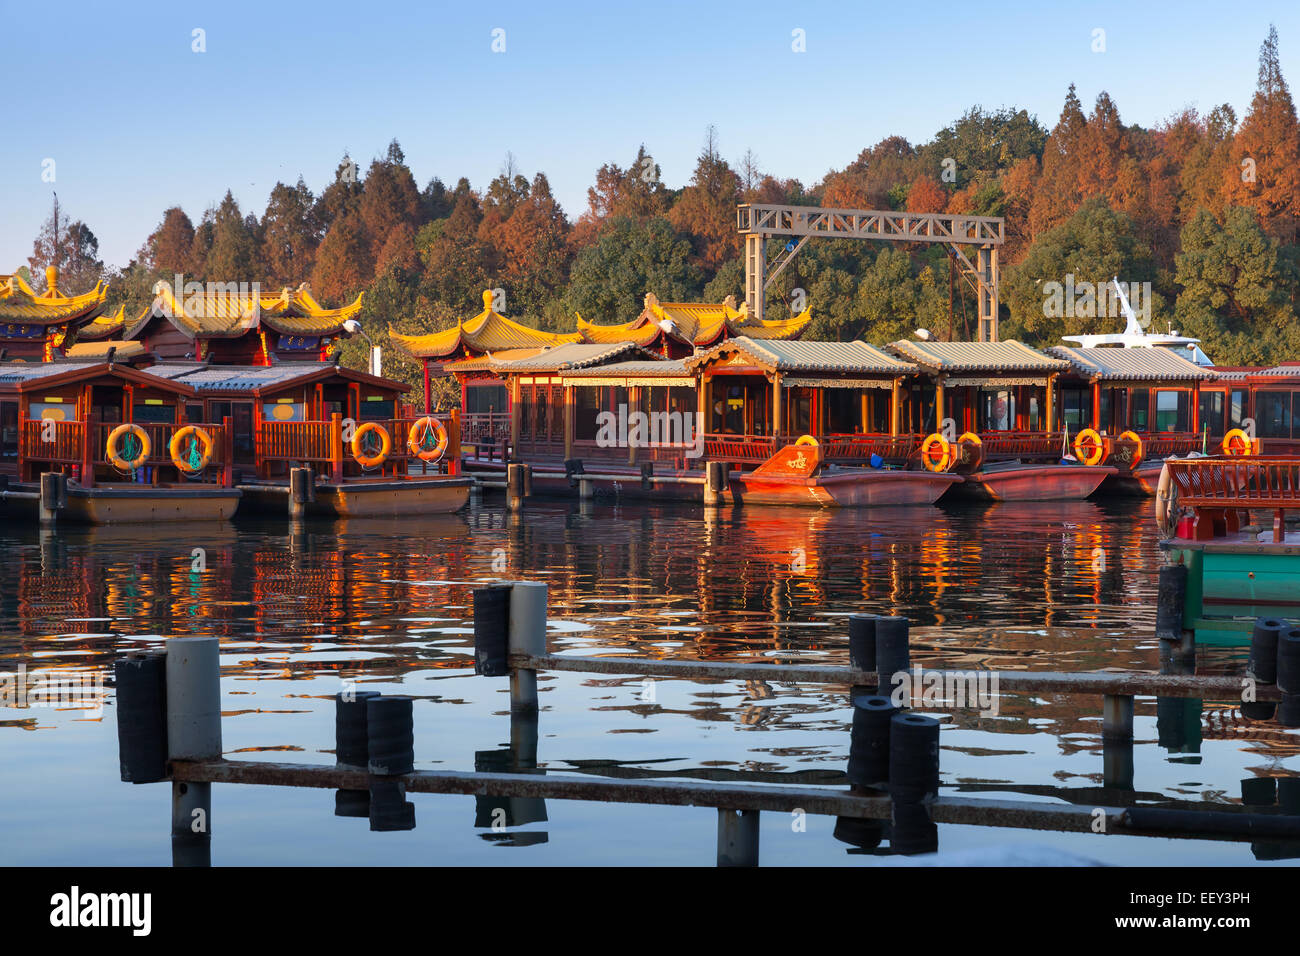 Loisirs en bois traditionnels chinois les bateaux sont amarrés sur la côte du lac de l'Ouest. Parc célèbre dans la ville de Hangzhou, Chine Banque D'Images